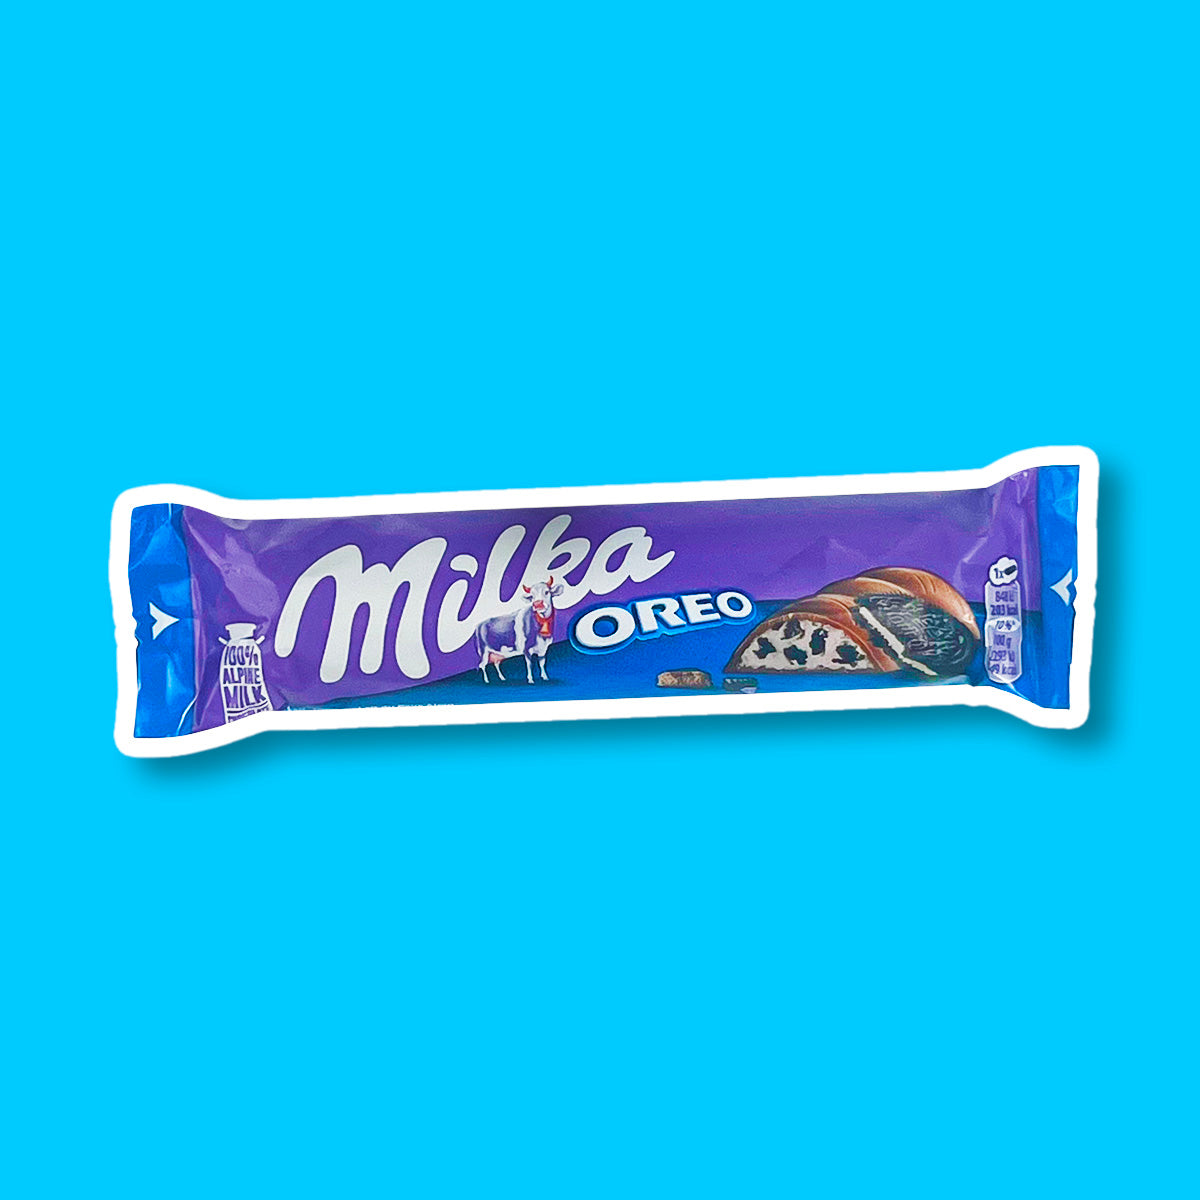 Un emballage mauve et bleu sur fond bleu à gauche il y a une vache blanche et rose, à gauche du chocolat fourré avec une crème blanche rempli de petits morceaux de biscuits noirs